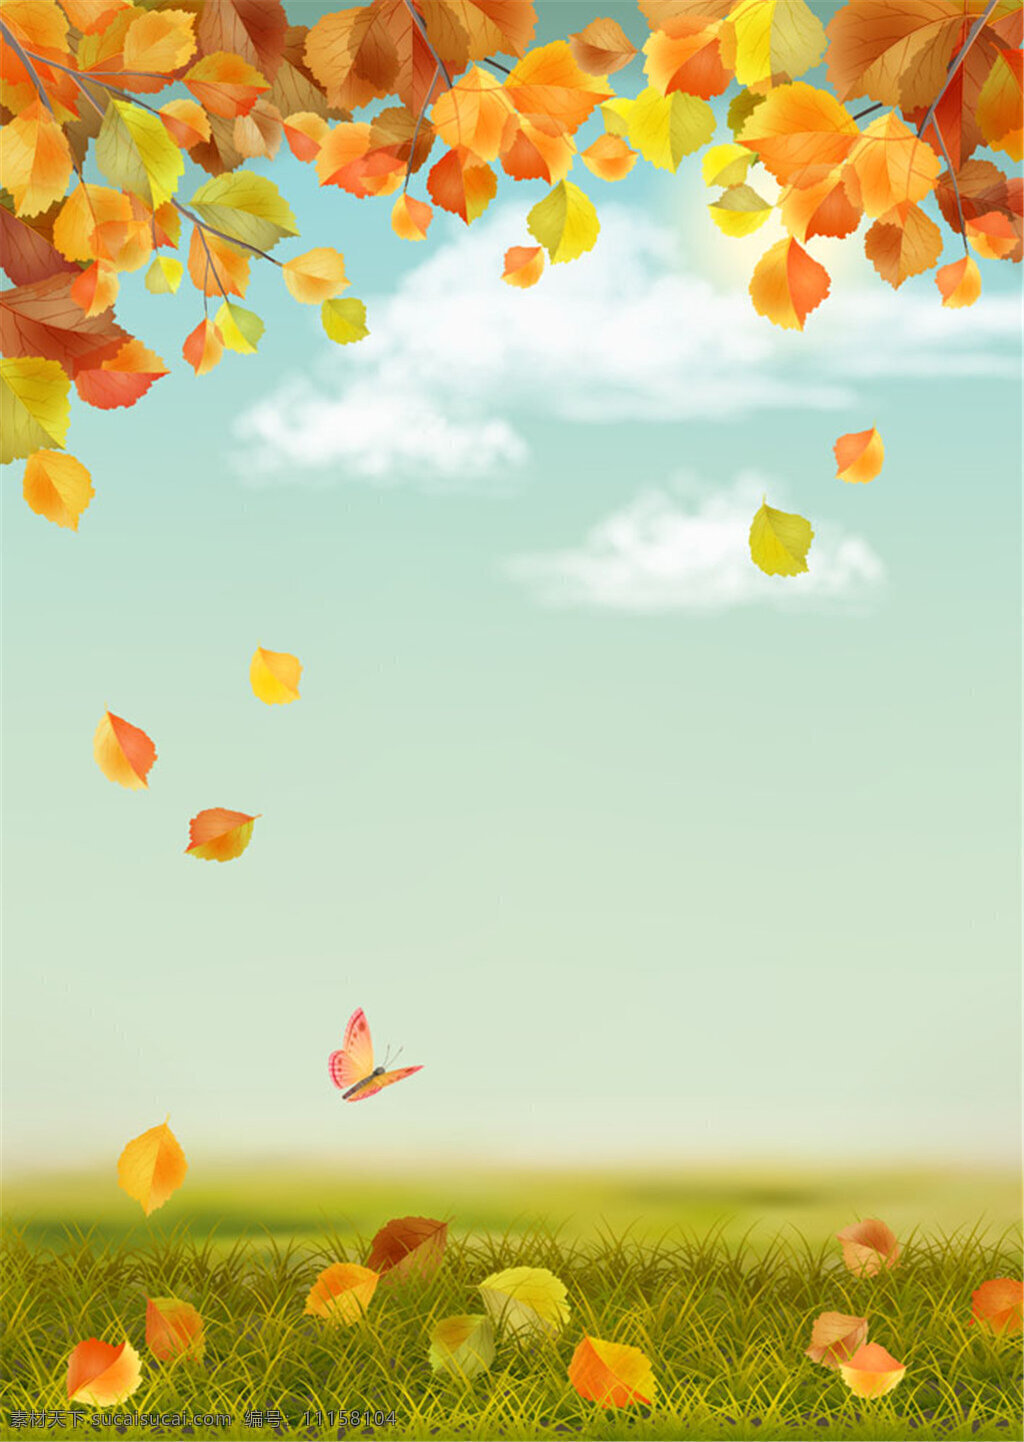 蝴蝶和落叶 蝴蝶 草地 矢量背景 枫叶 落叶